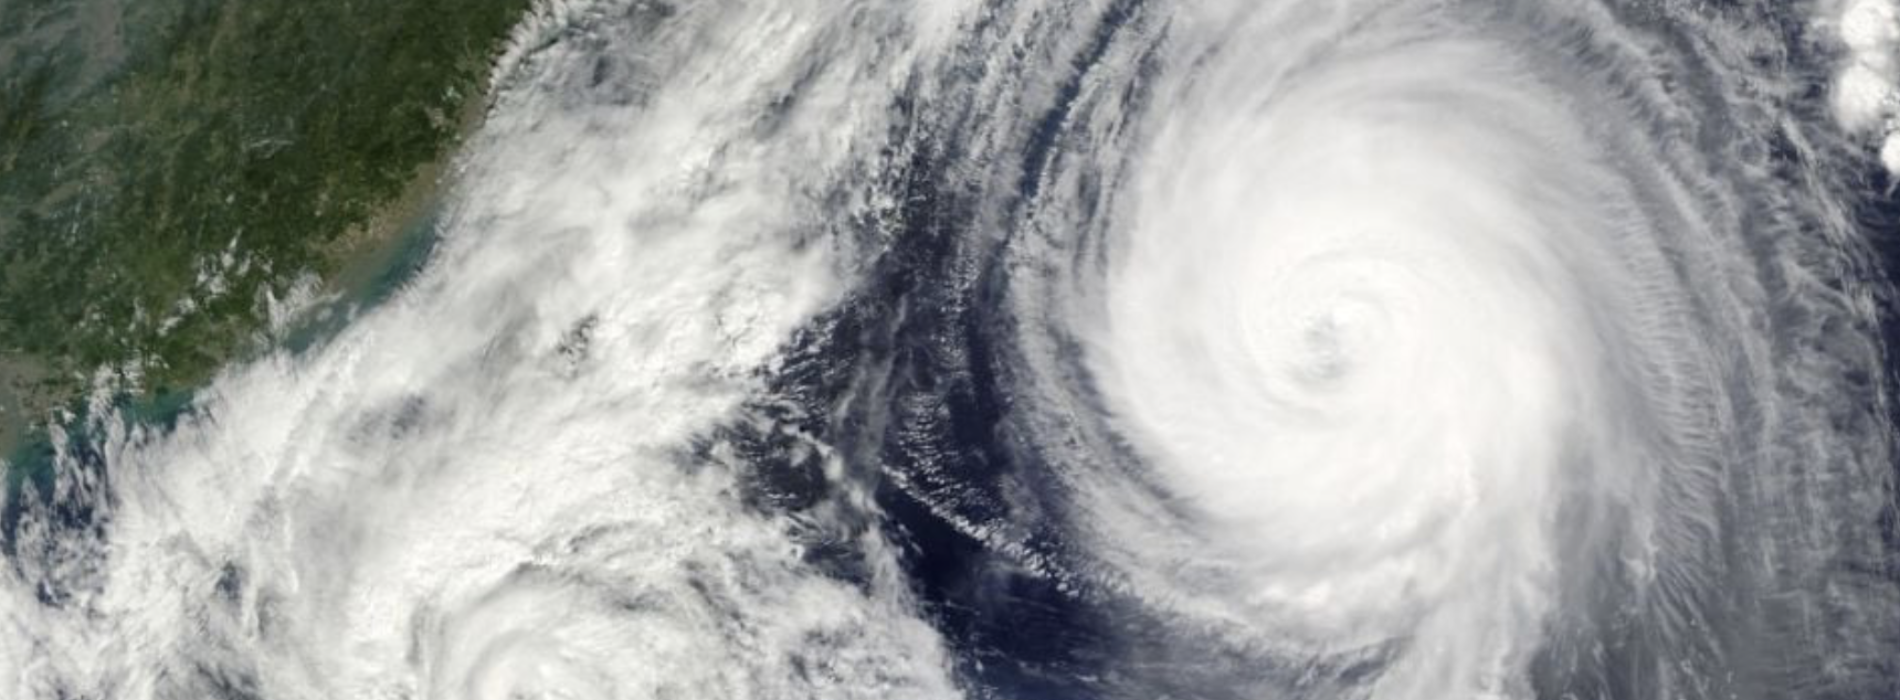 OAXACA en la lista de lugares en riesgo durante temporada de huracanes «extremadamente activa»